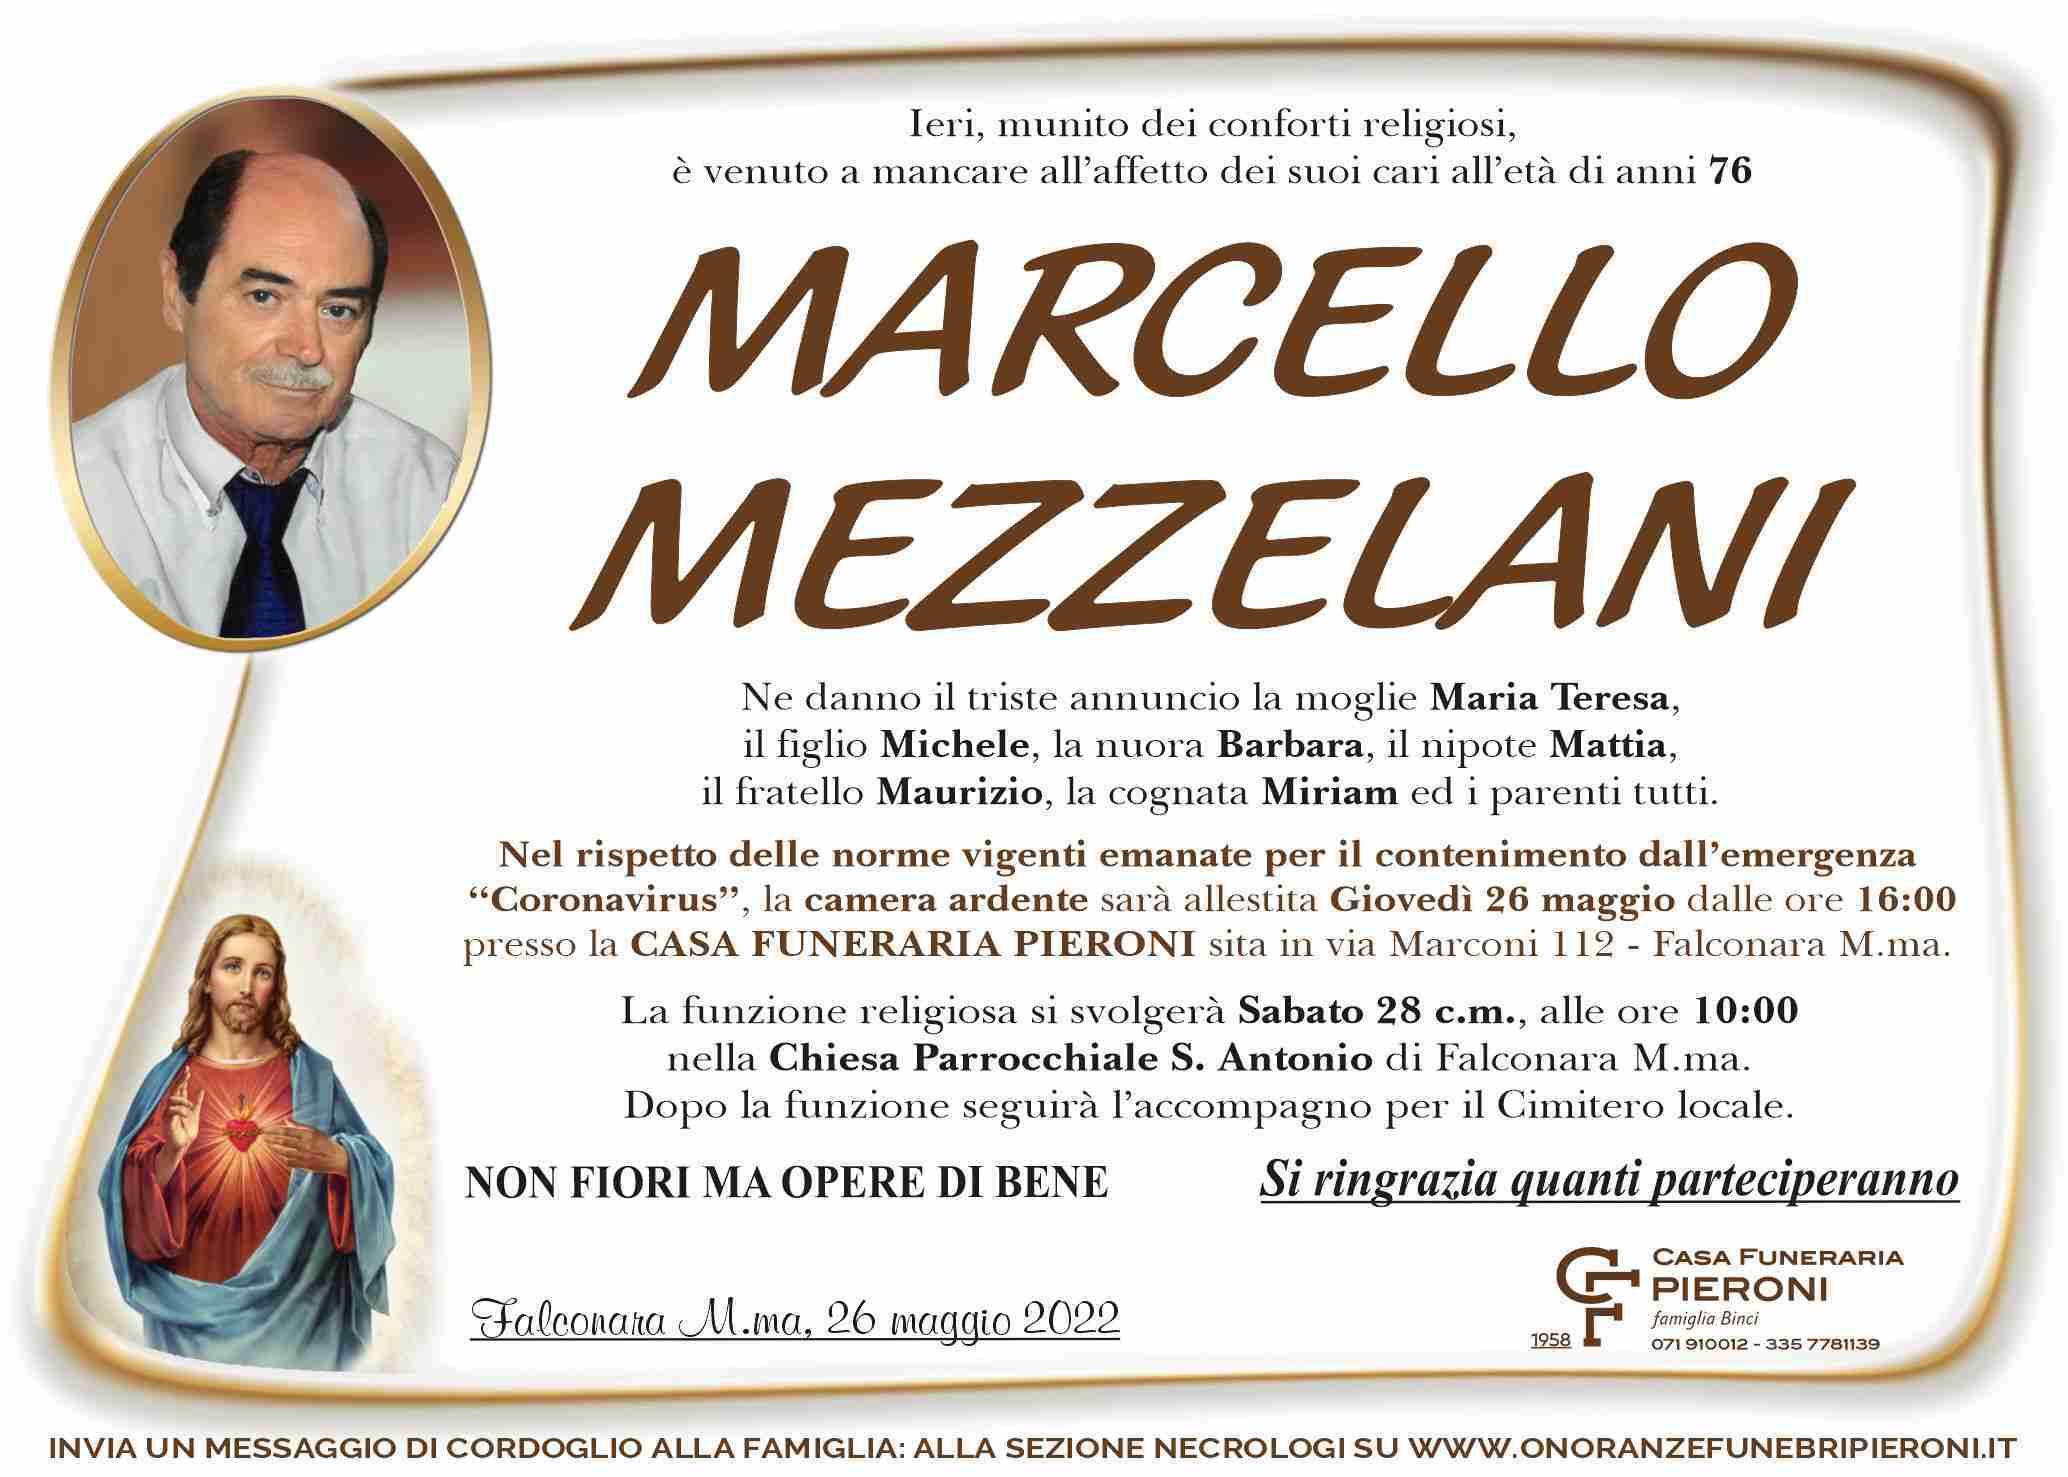 Marcello Mezzelani